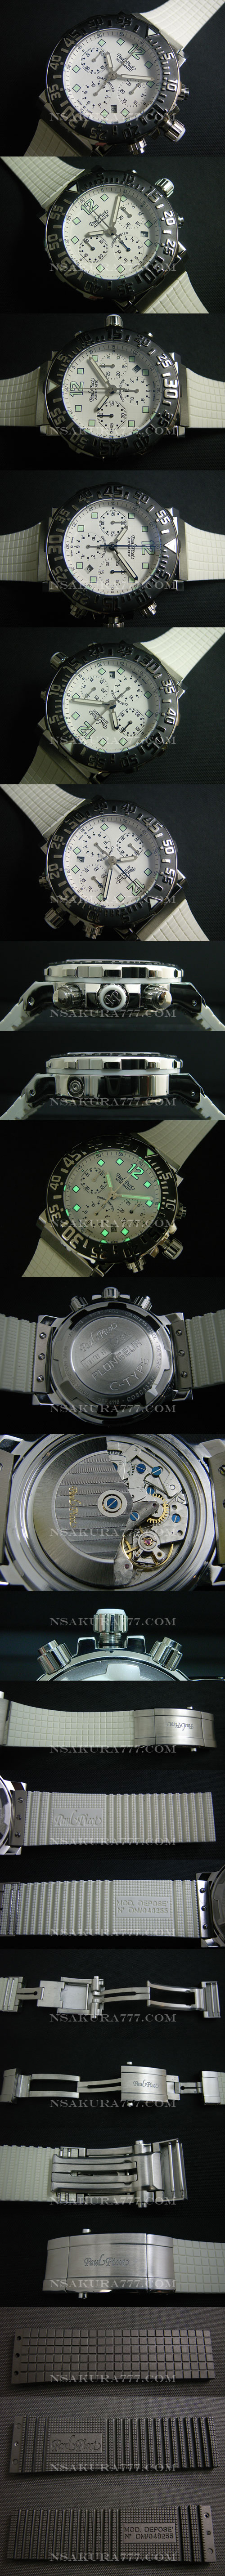 レプリカ時計ポールピコ自動巻廉価版7750搭載 - ウインドウを閉じる